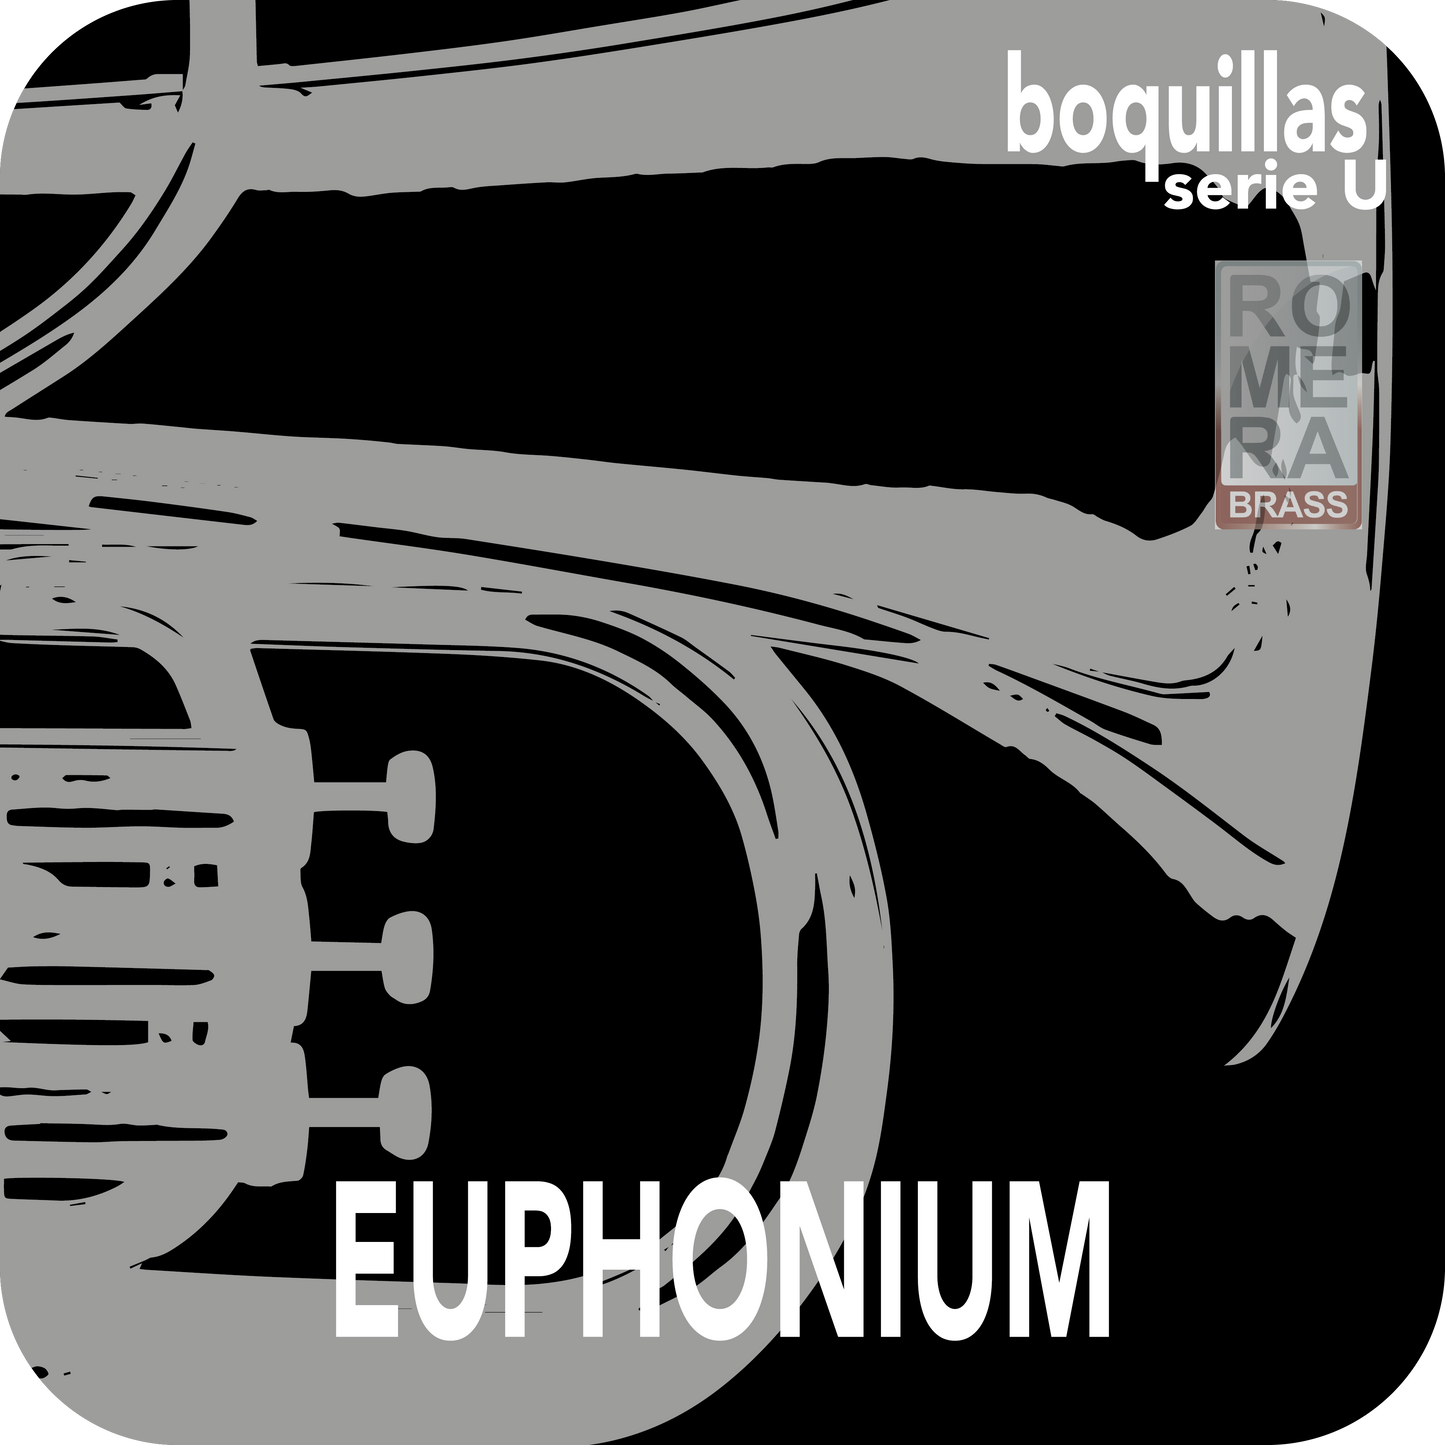 Boquillas de Euphonium - CUSTOM